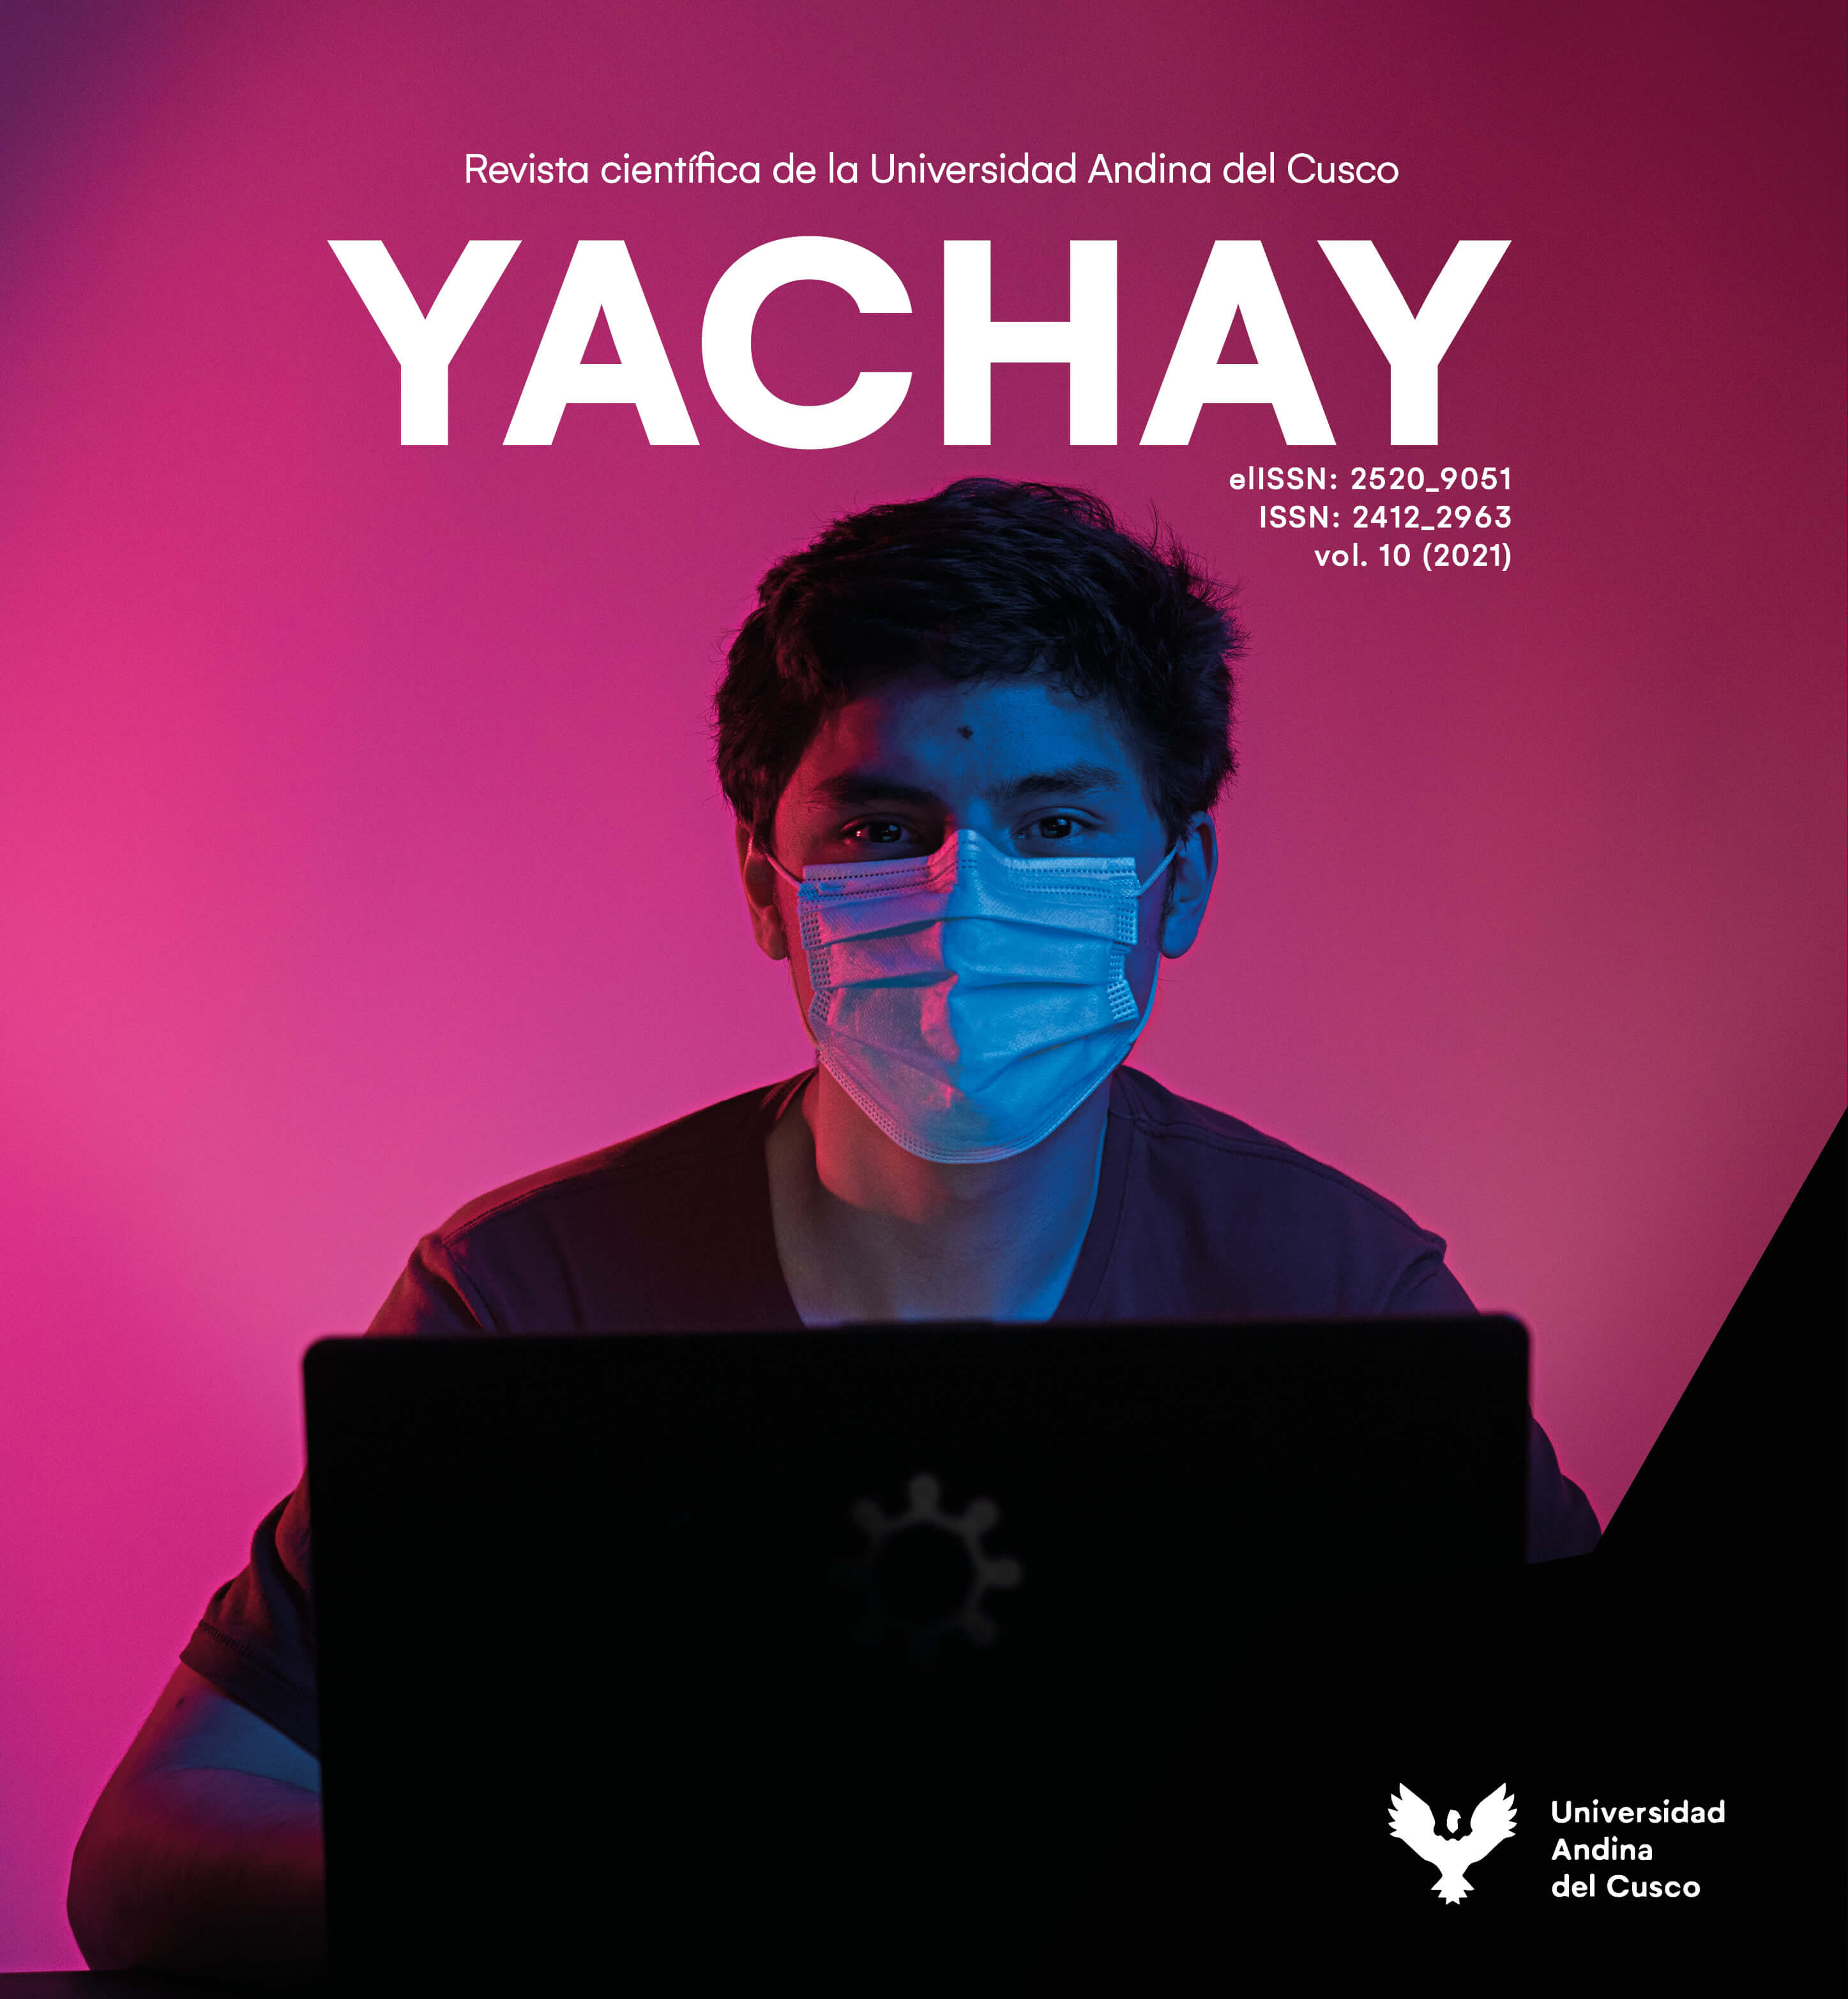 					Ver Vol. 10 Núm. 1 (2021): Yachay Revista científico cultural 2021
				